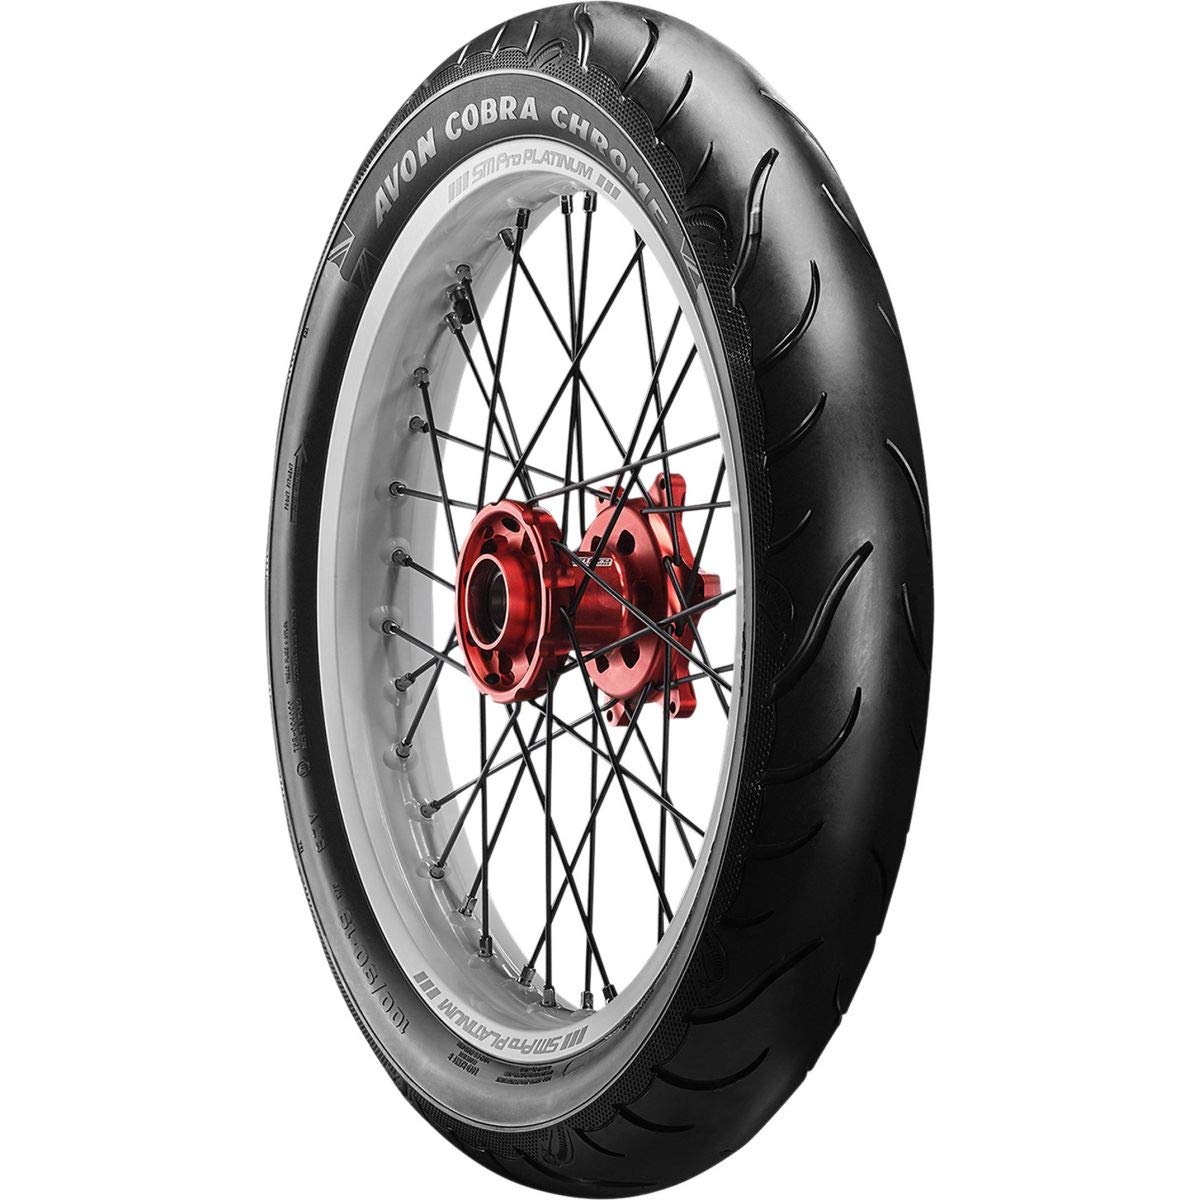 Reifen pneus Avon Cobra chrome MT90B16 74H TL motorradreifen von Avon Tyres